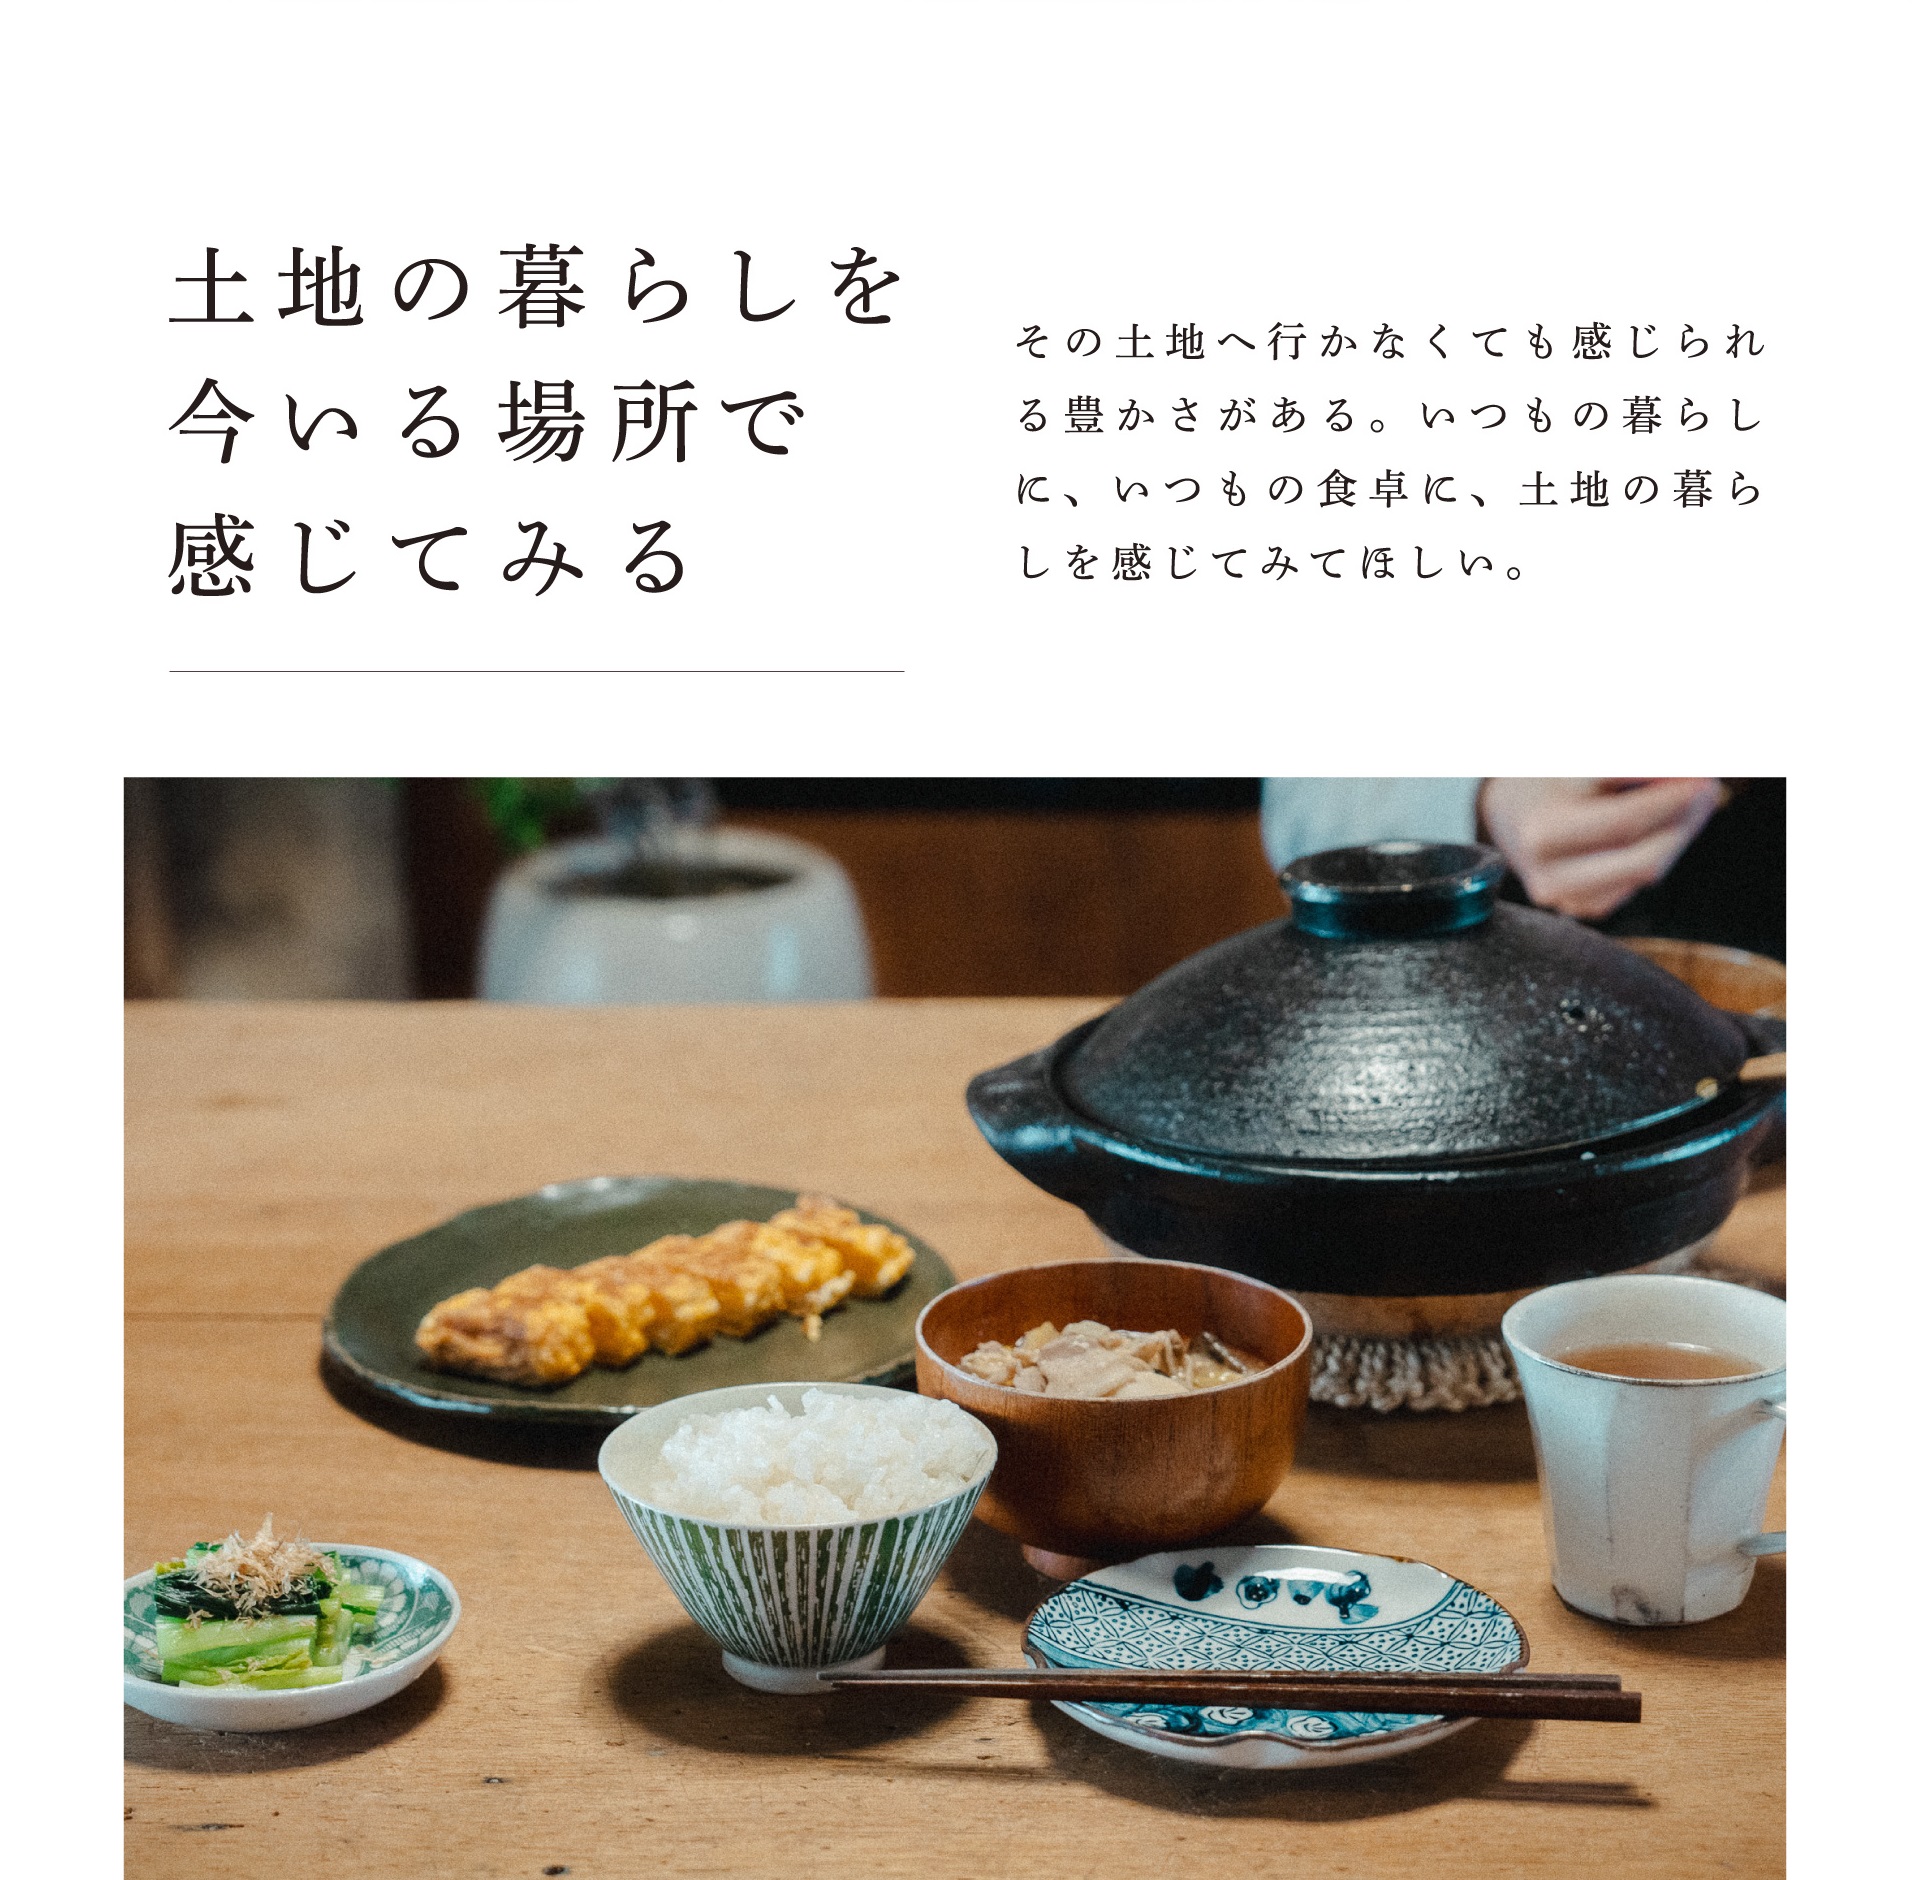 土地の暮らしを今いる場所で感じてみる 長和町産の食材を使った食卓風景